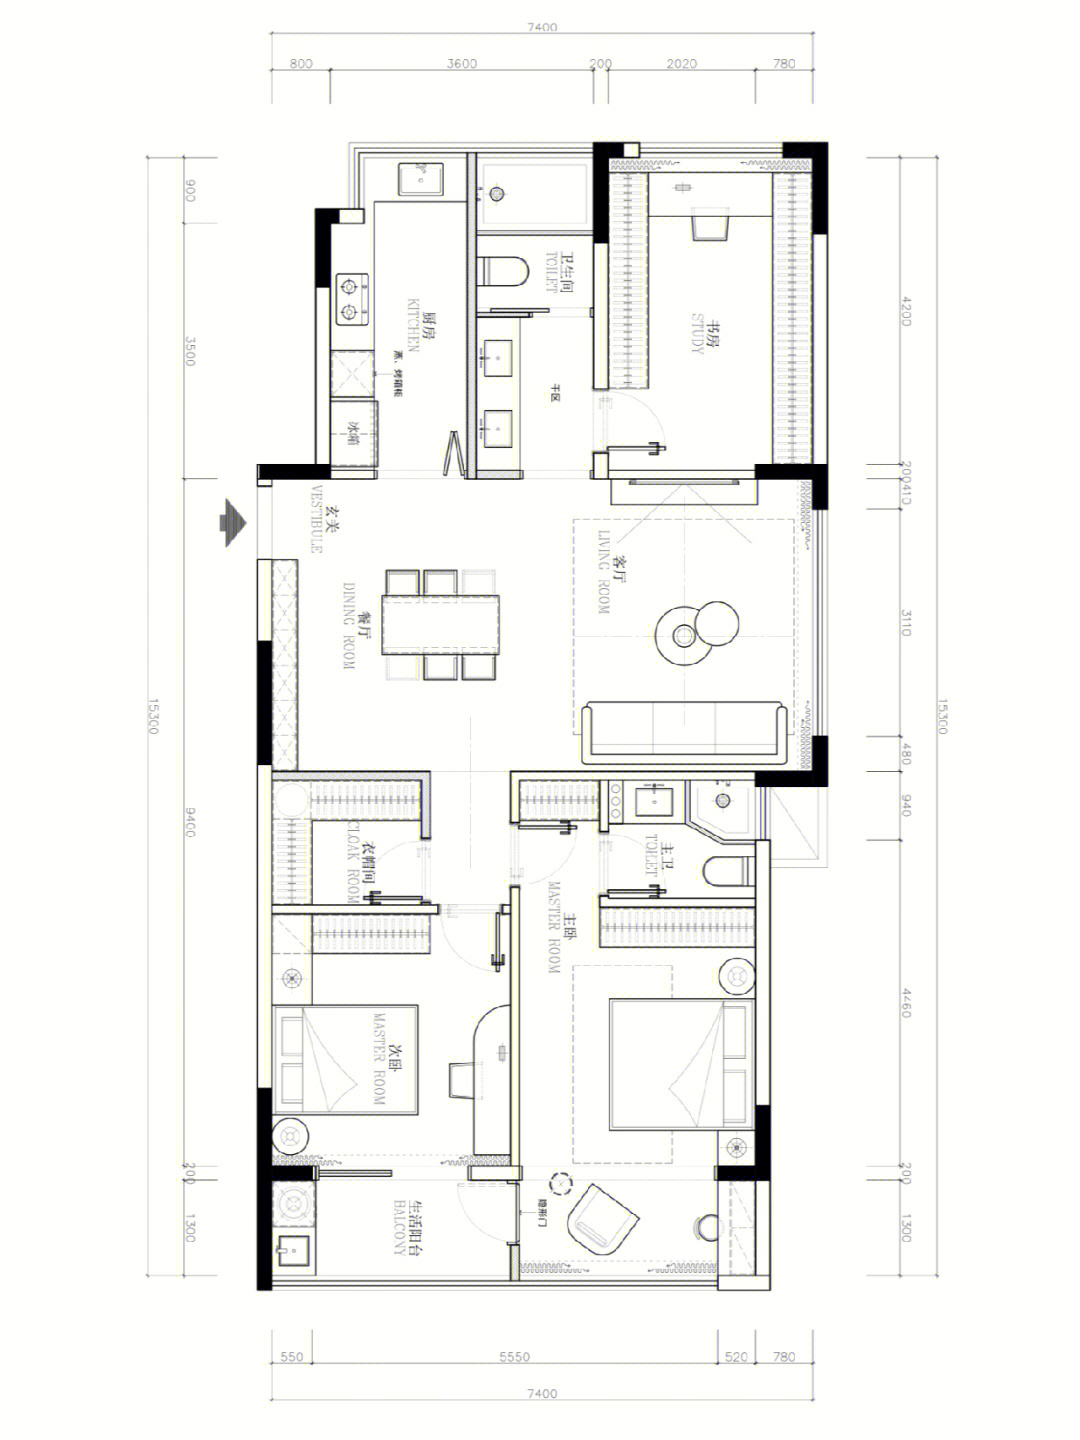 长方形公寓户型设计图图片